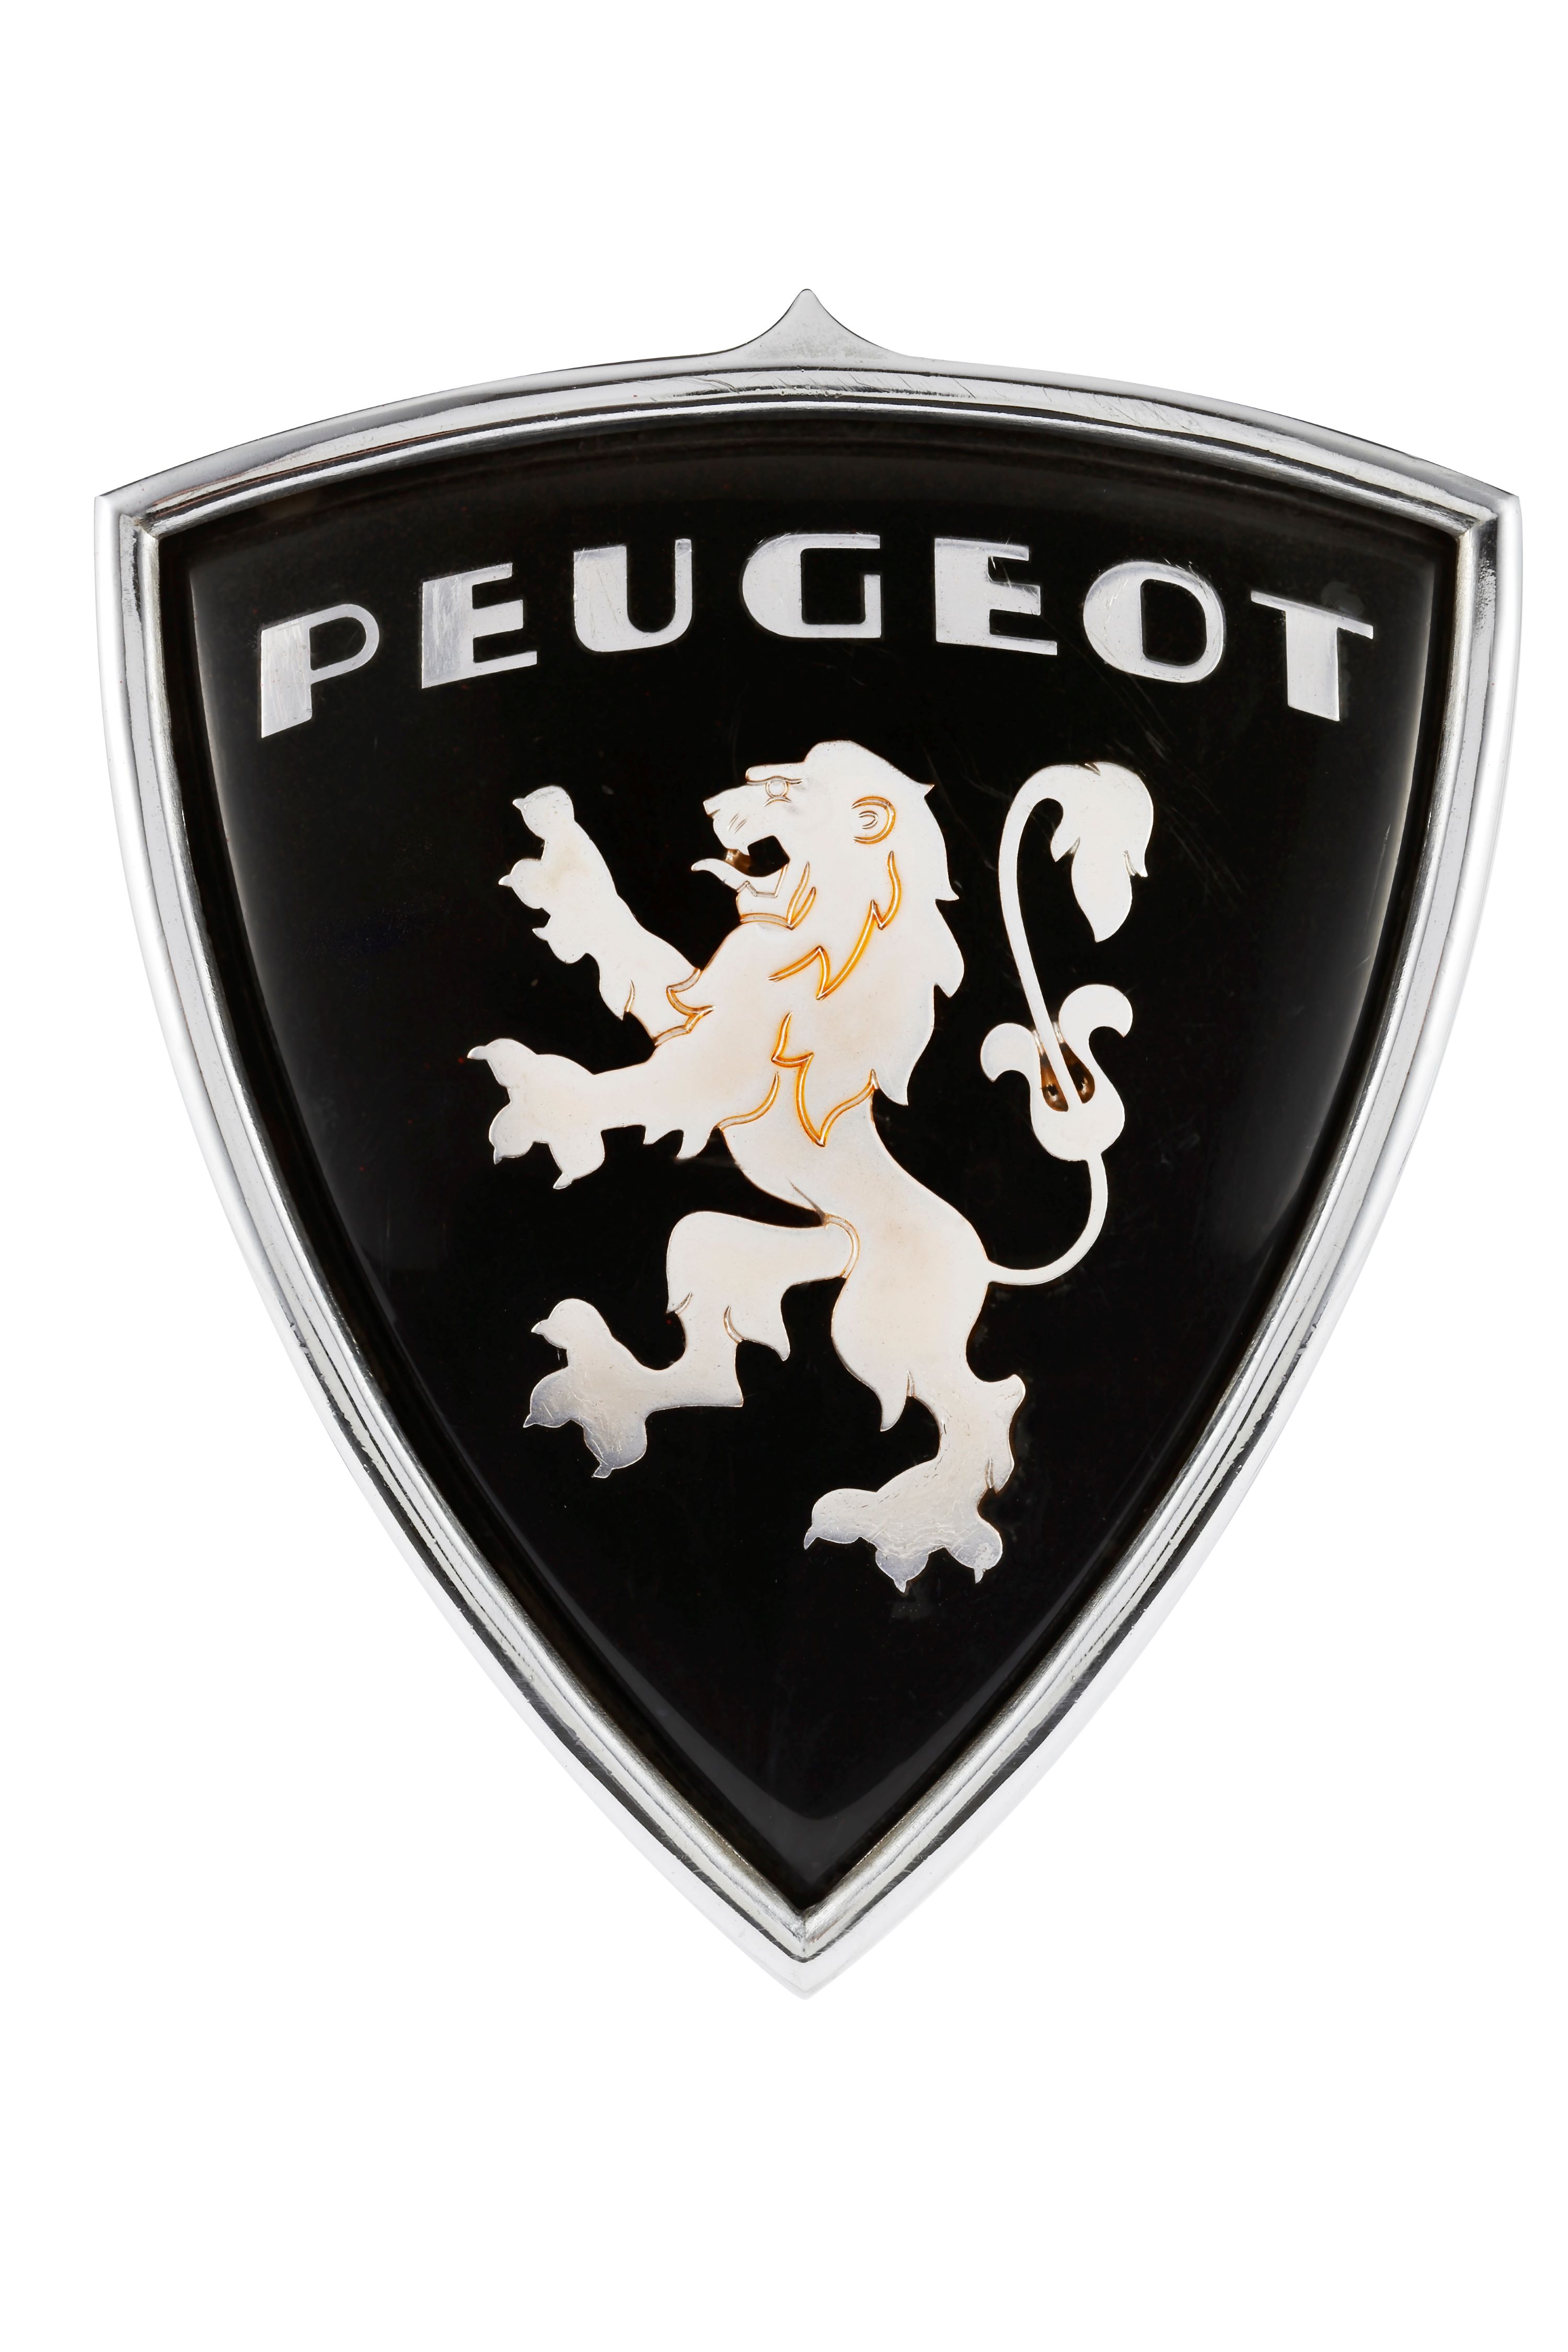 Герб где лев. Пежо логотип. Значок машины Пежо. Эмблема авто со львом. Марка машины с львом на эмблеме.